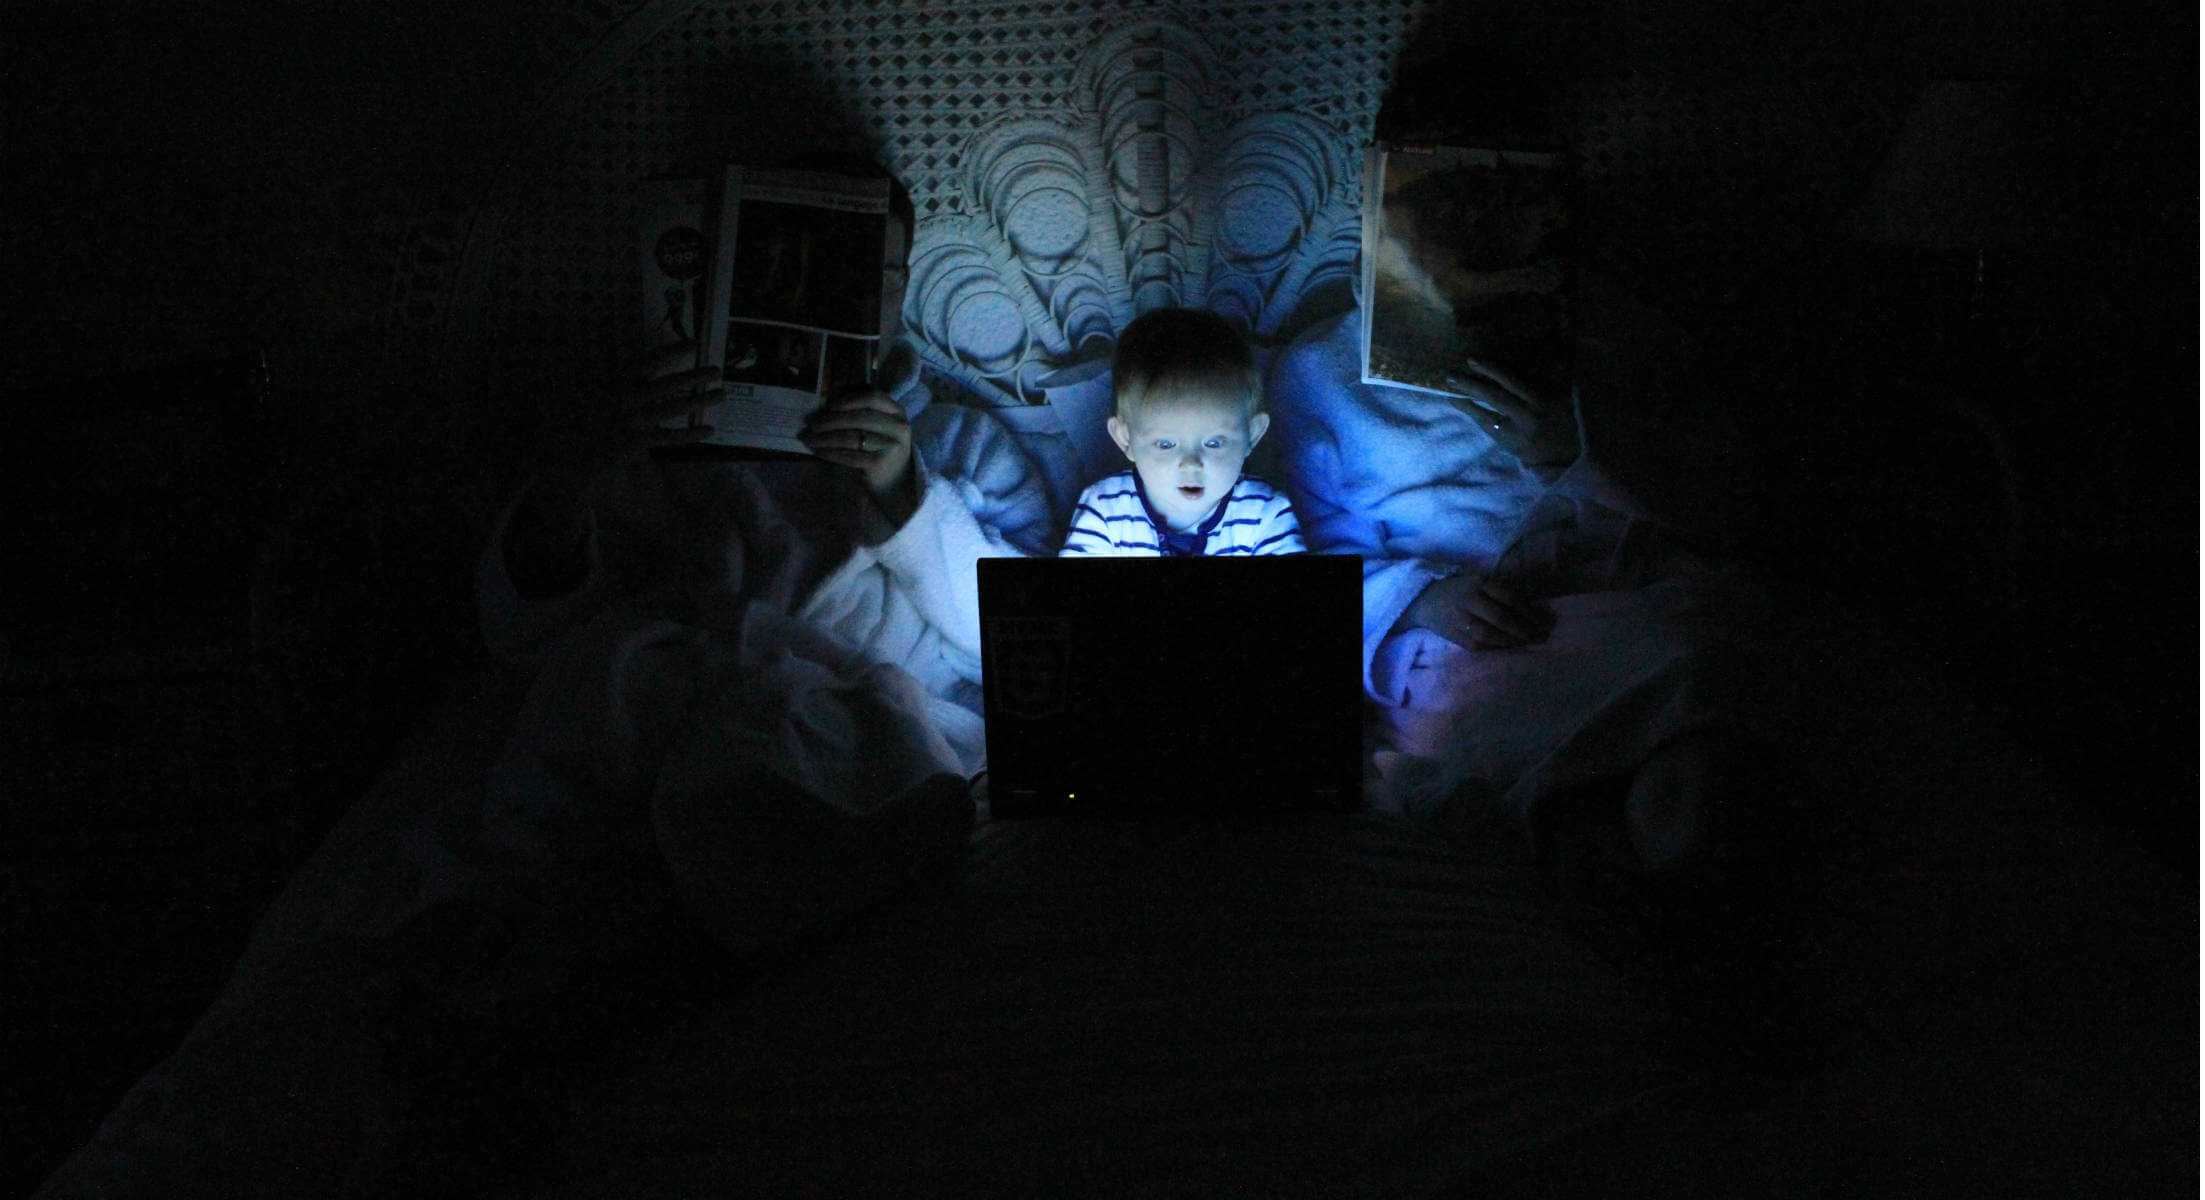 Ciberseguridad: cómo proteger a los niños en Internet